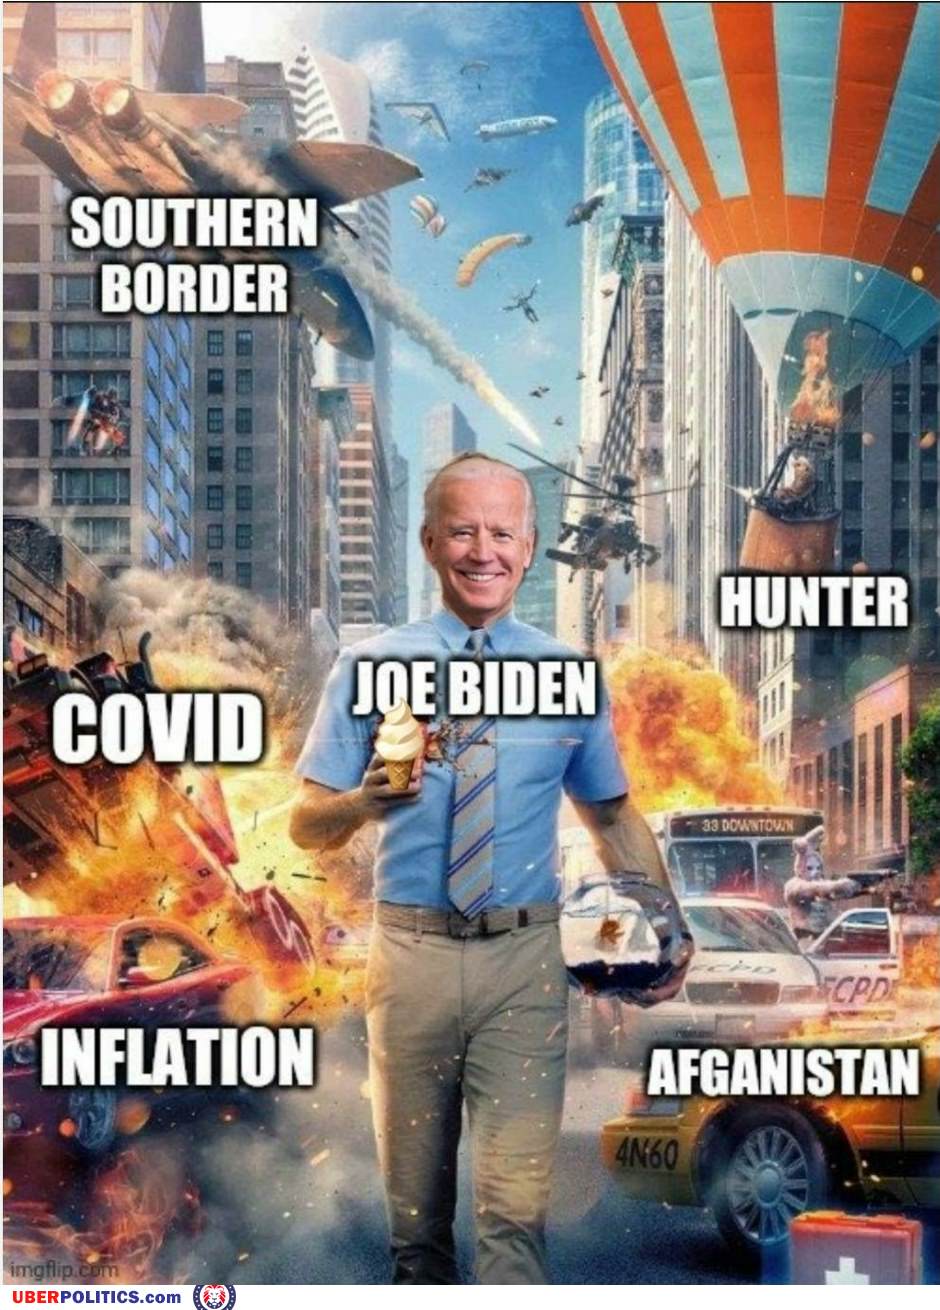 Ahhh Joe Biden